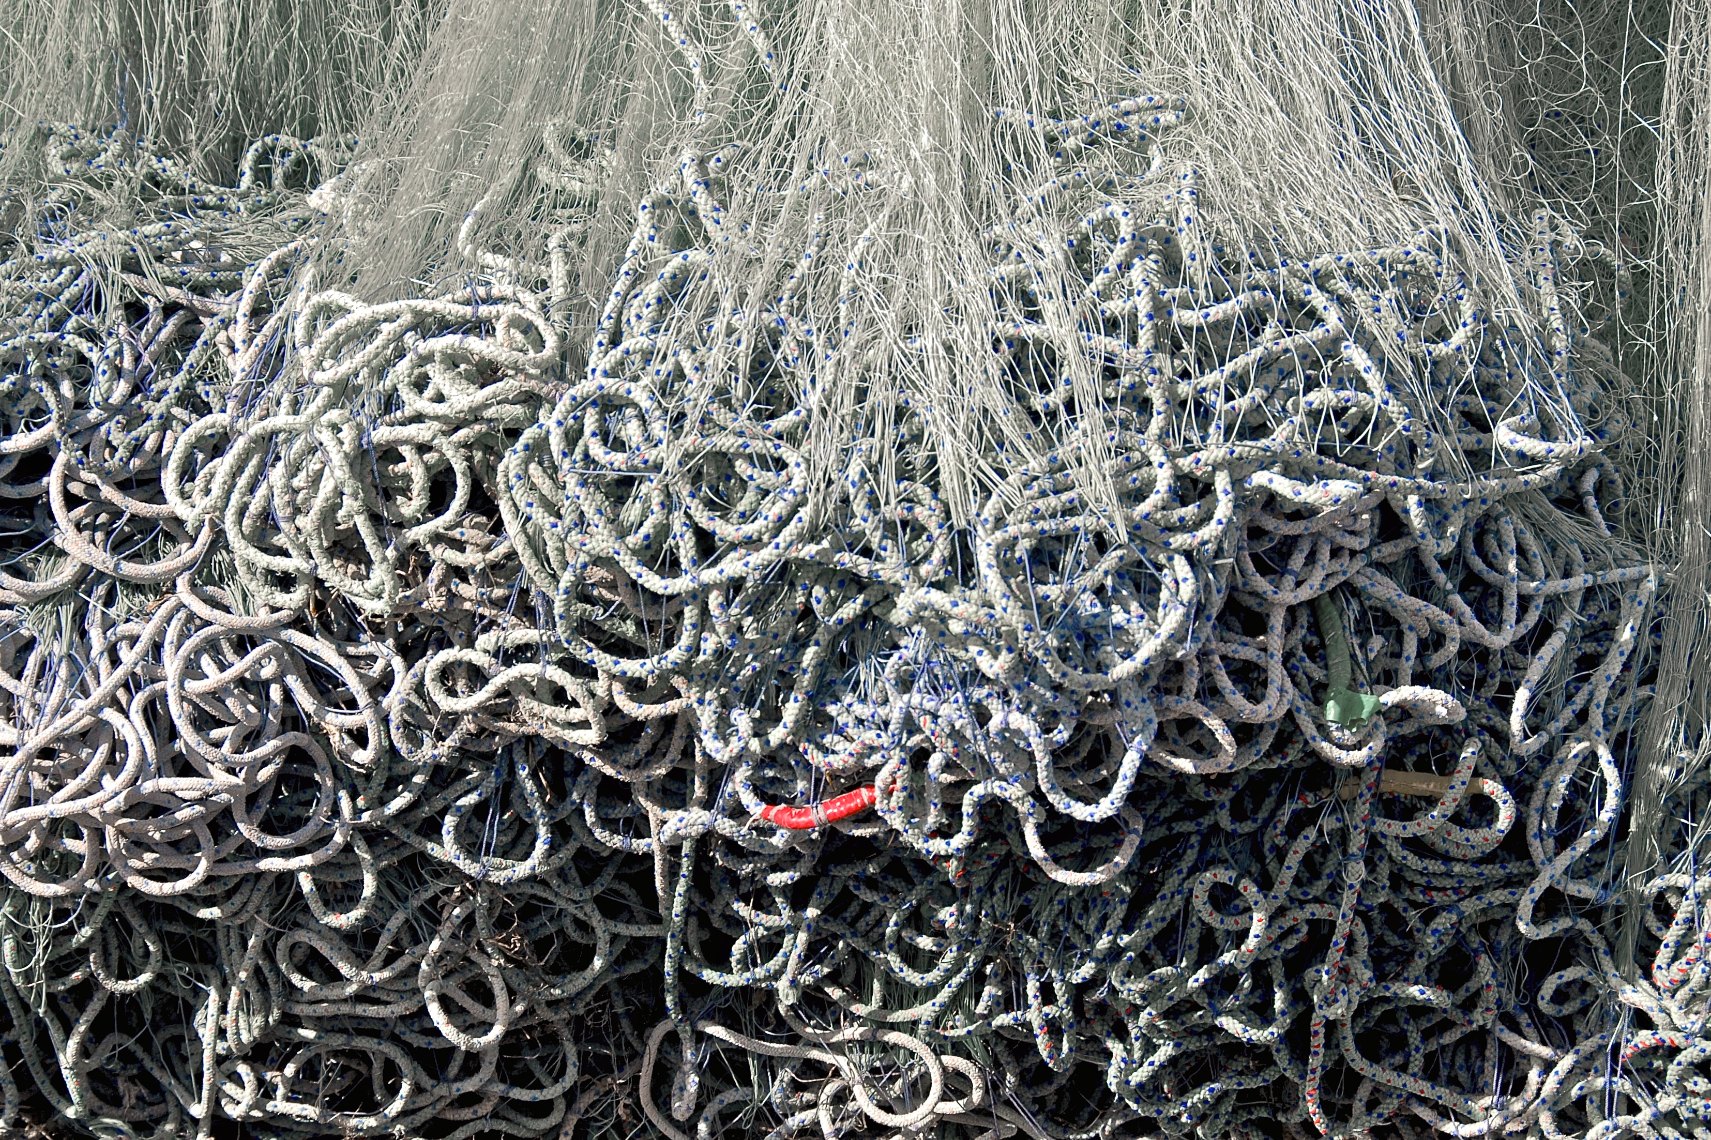 Qatar fishing nets